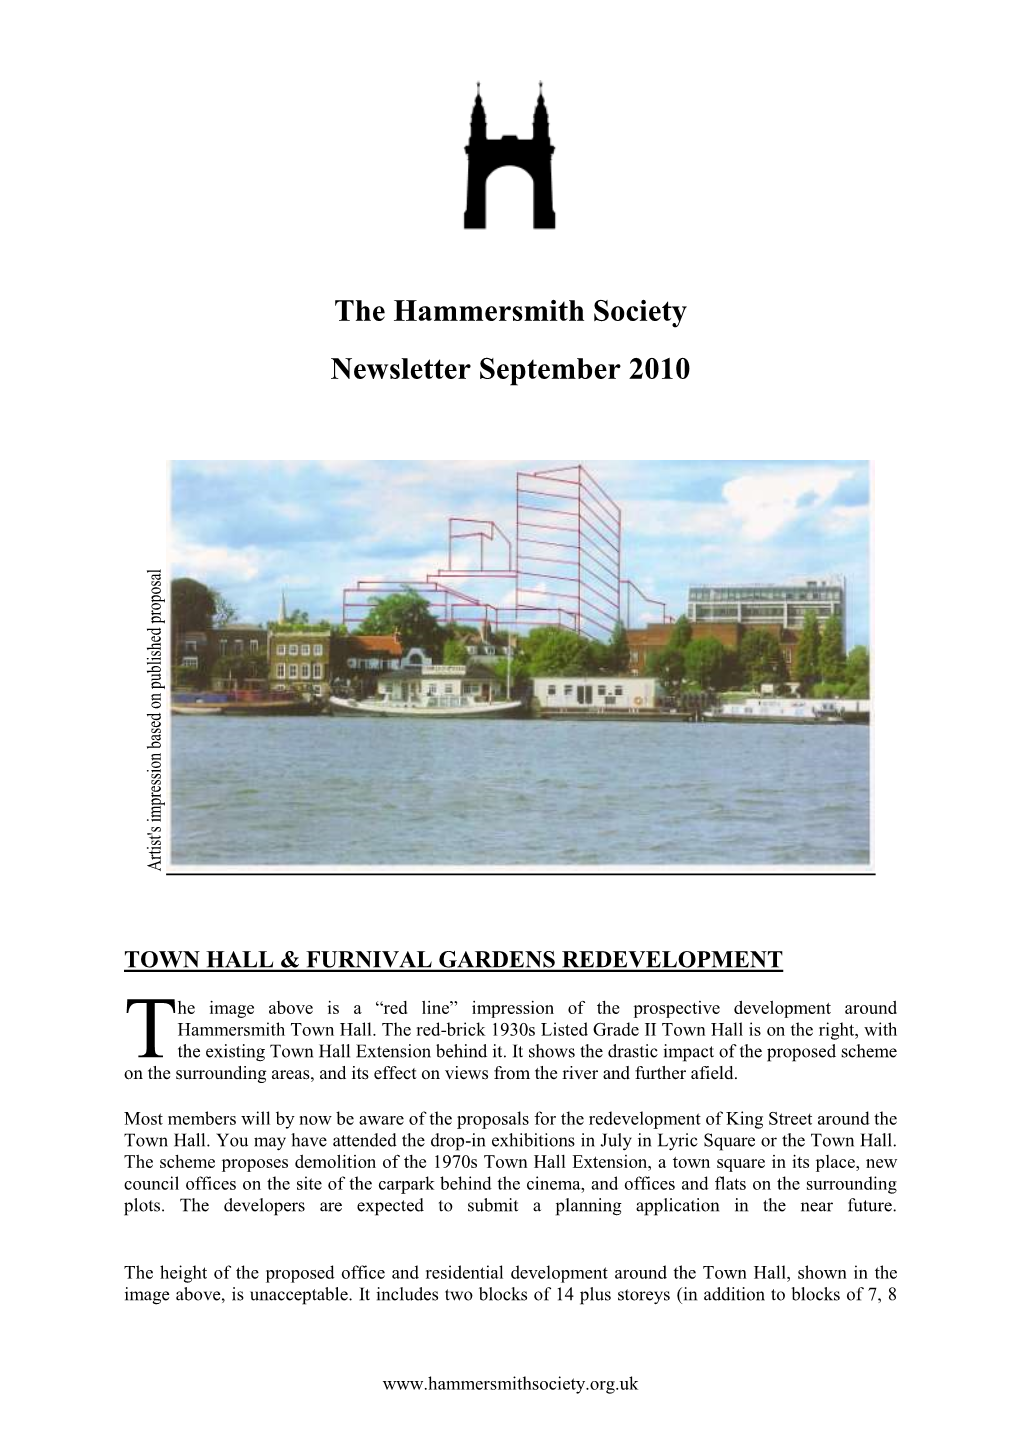 The Hammersmith Society Newsletter September 2010